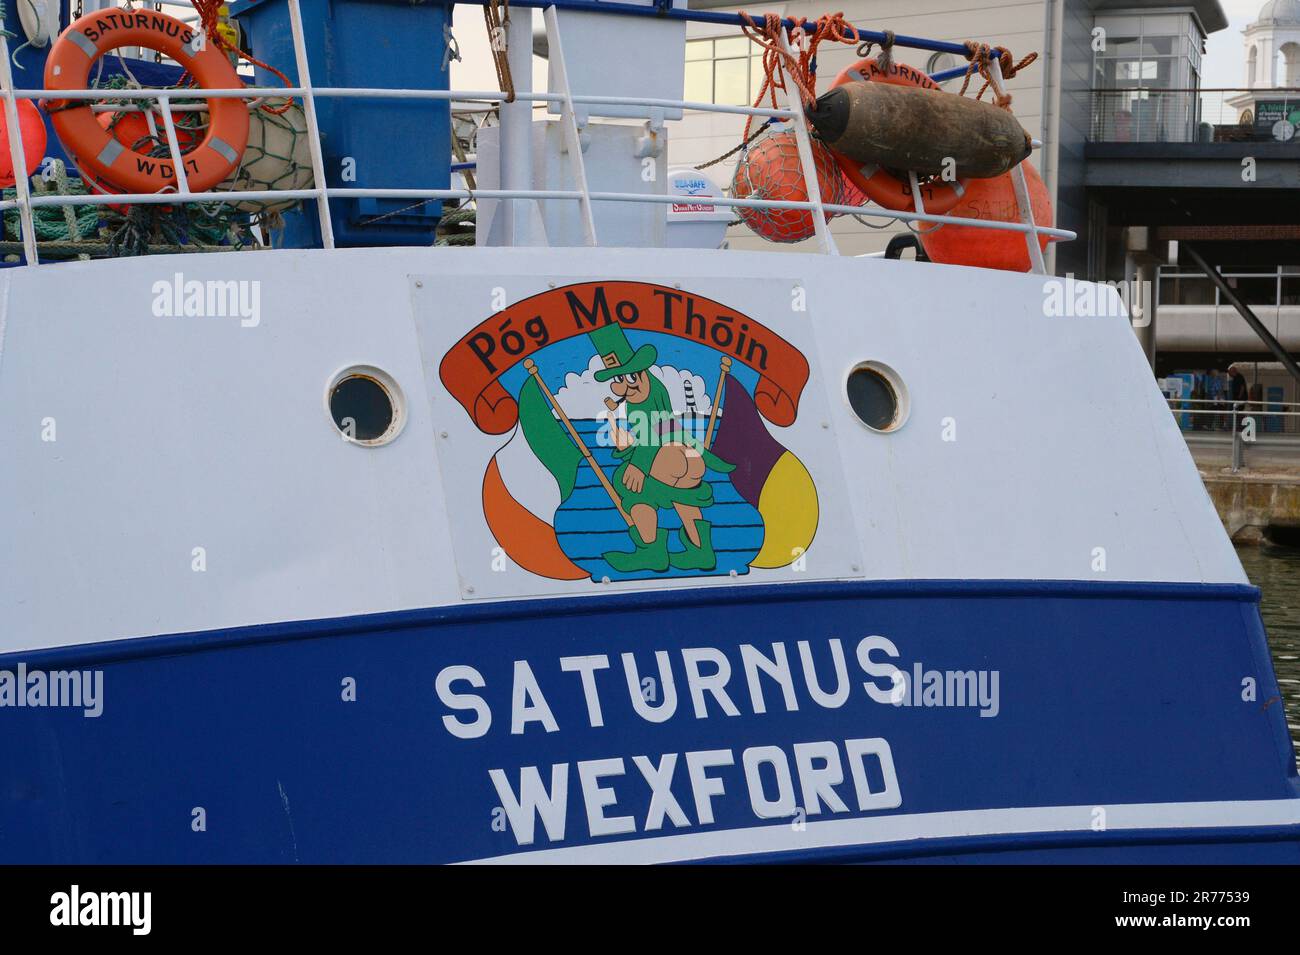 Inghilterra, Hampshire, Portsmouth, nave da pesca irlandese in porto con POG Mo Thoin e Leprechaun dipinto sopra il nome. Foto Stock